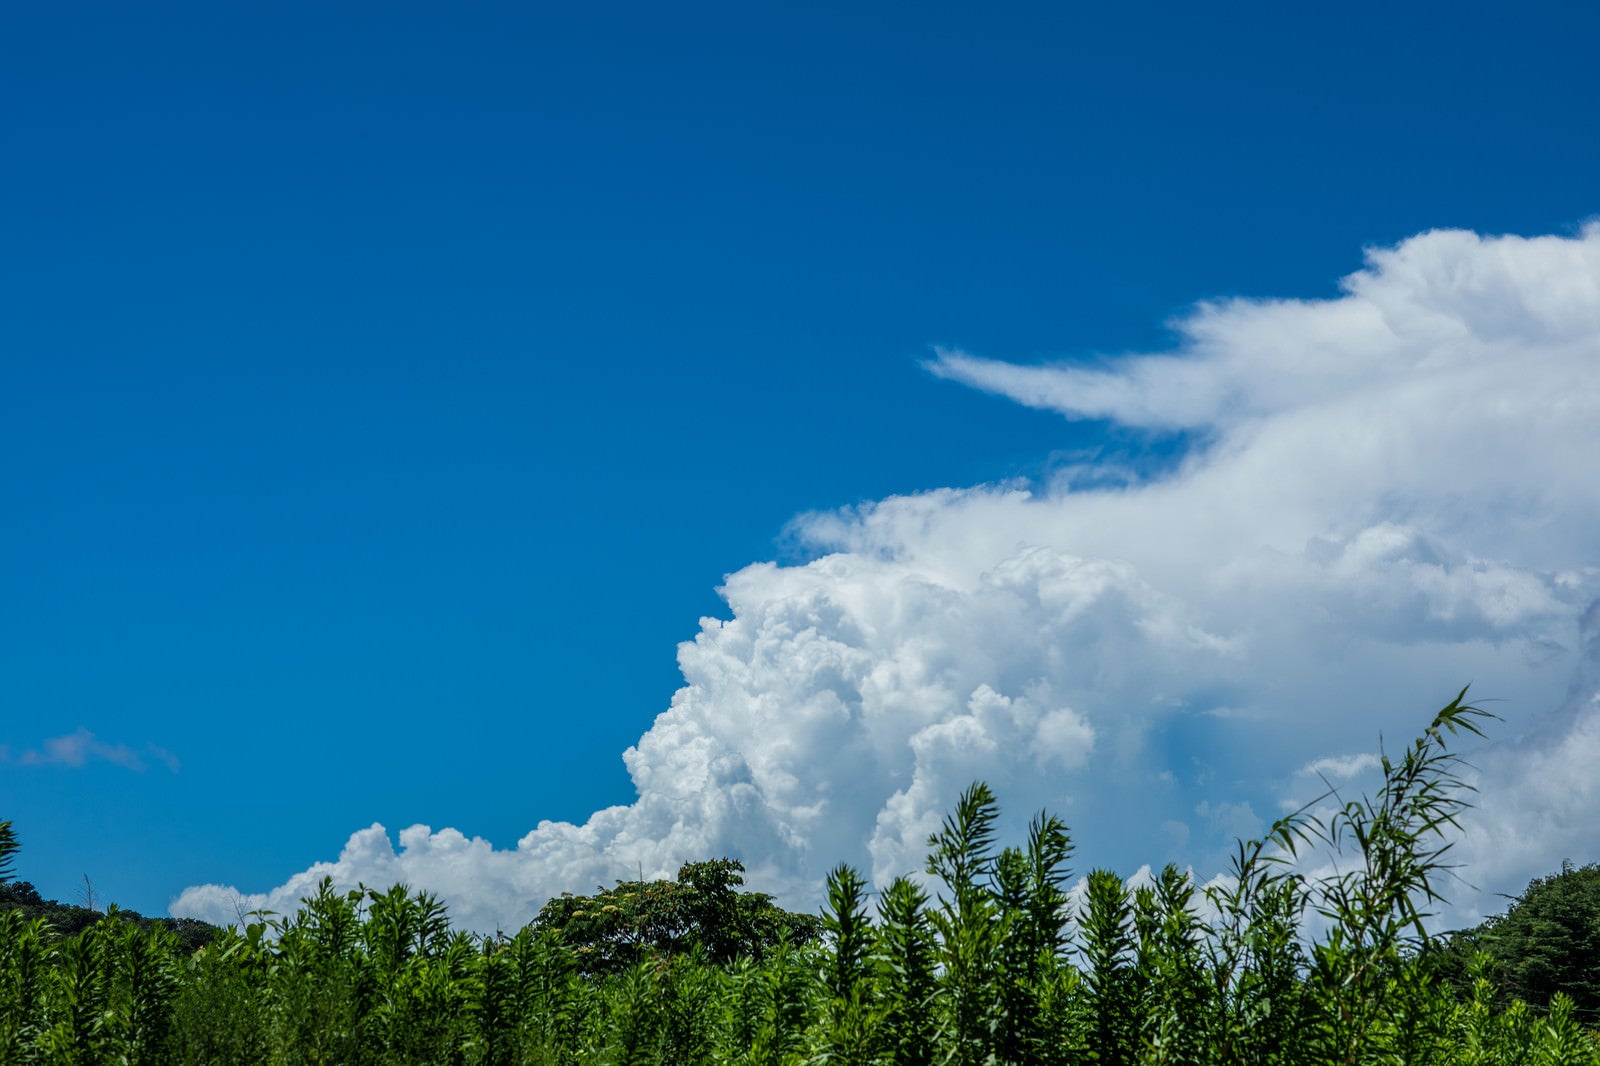 「積乱雲と植物」の写真